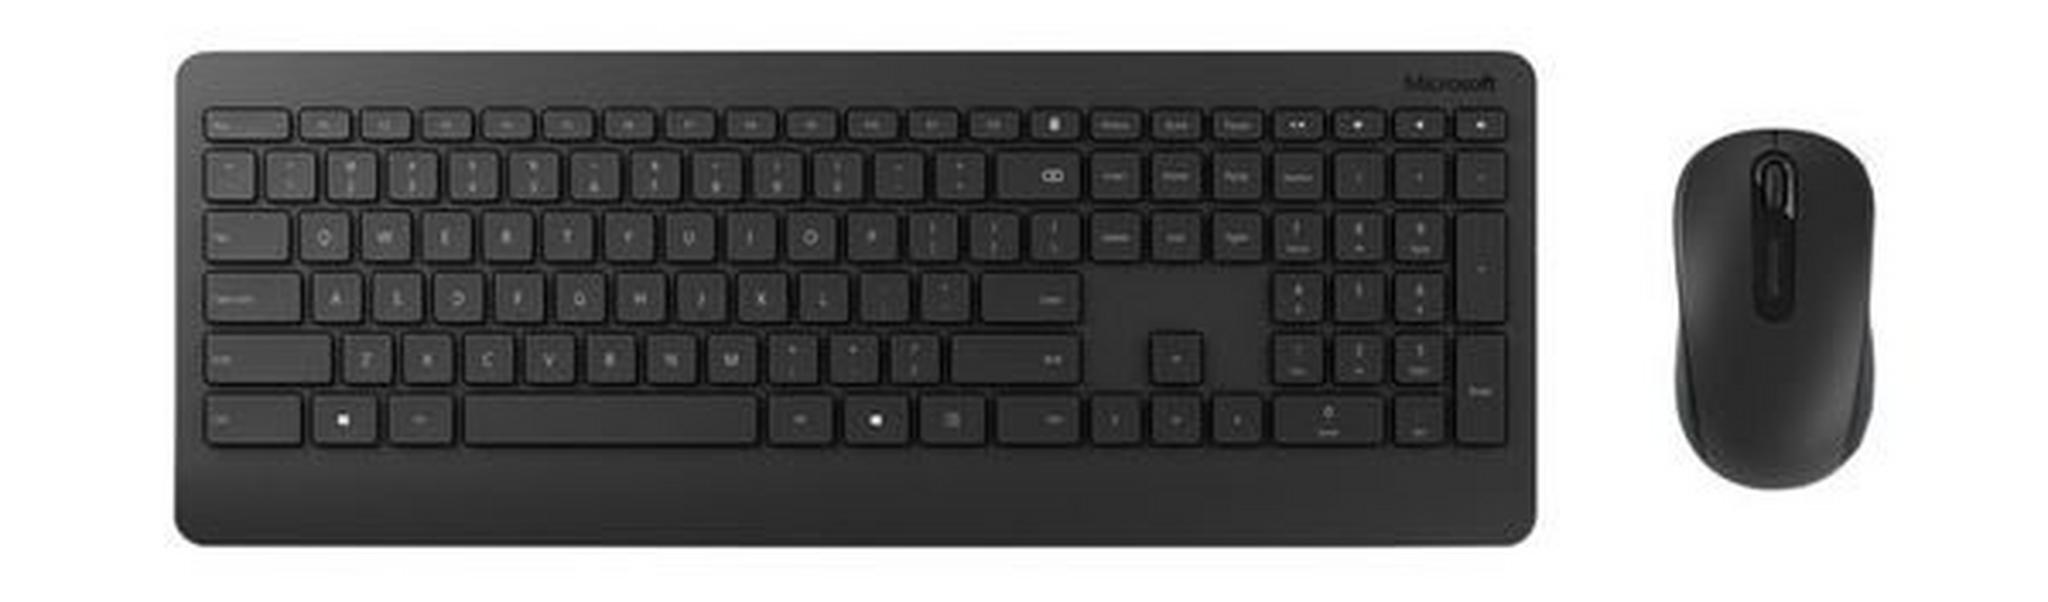 لوحة مفاتيح وماوس لاسلكي للديسك توب ٩٠٠ من مايكروسوفت – أسود - (PT3-00018)